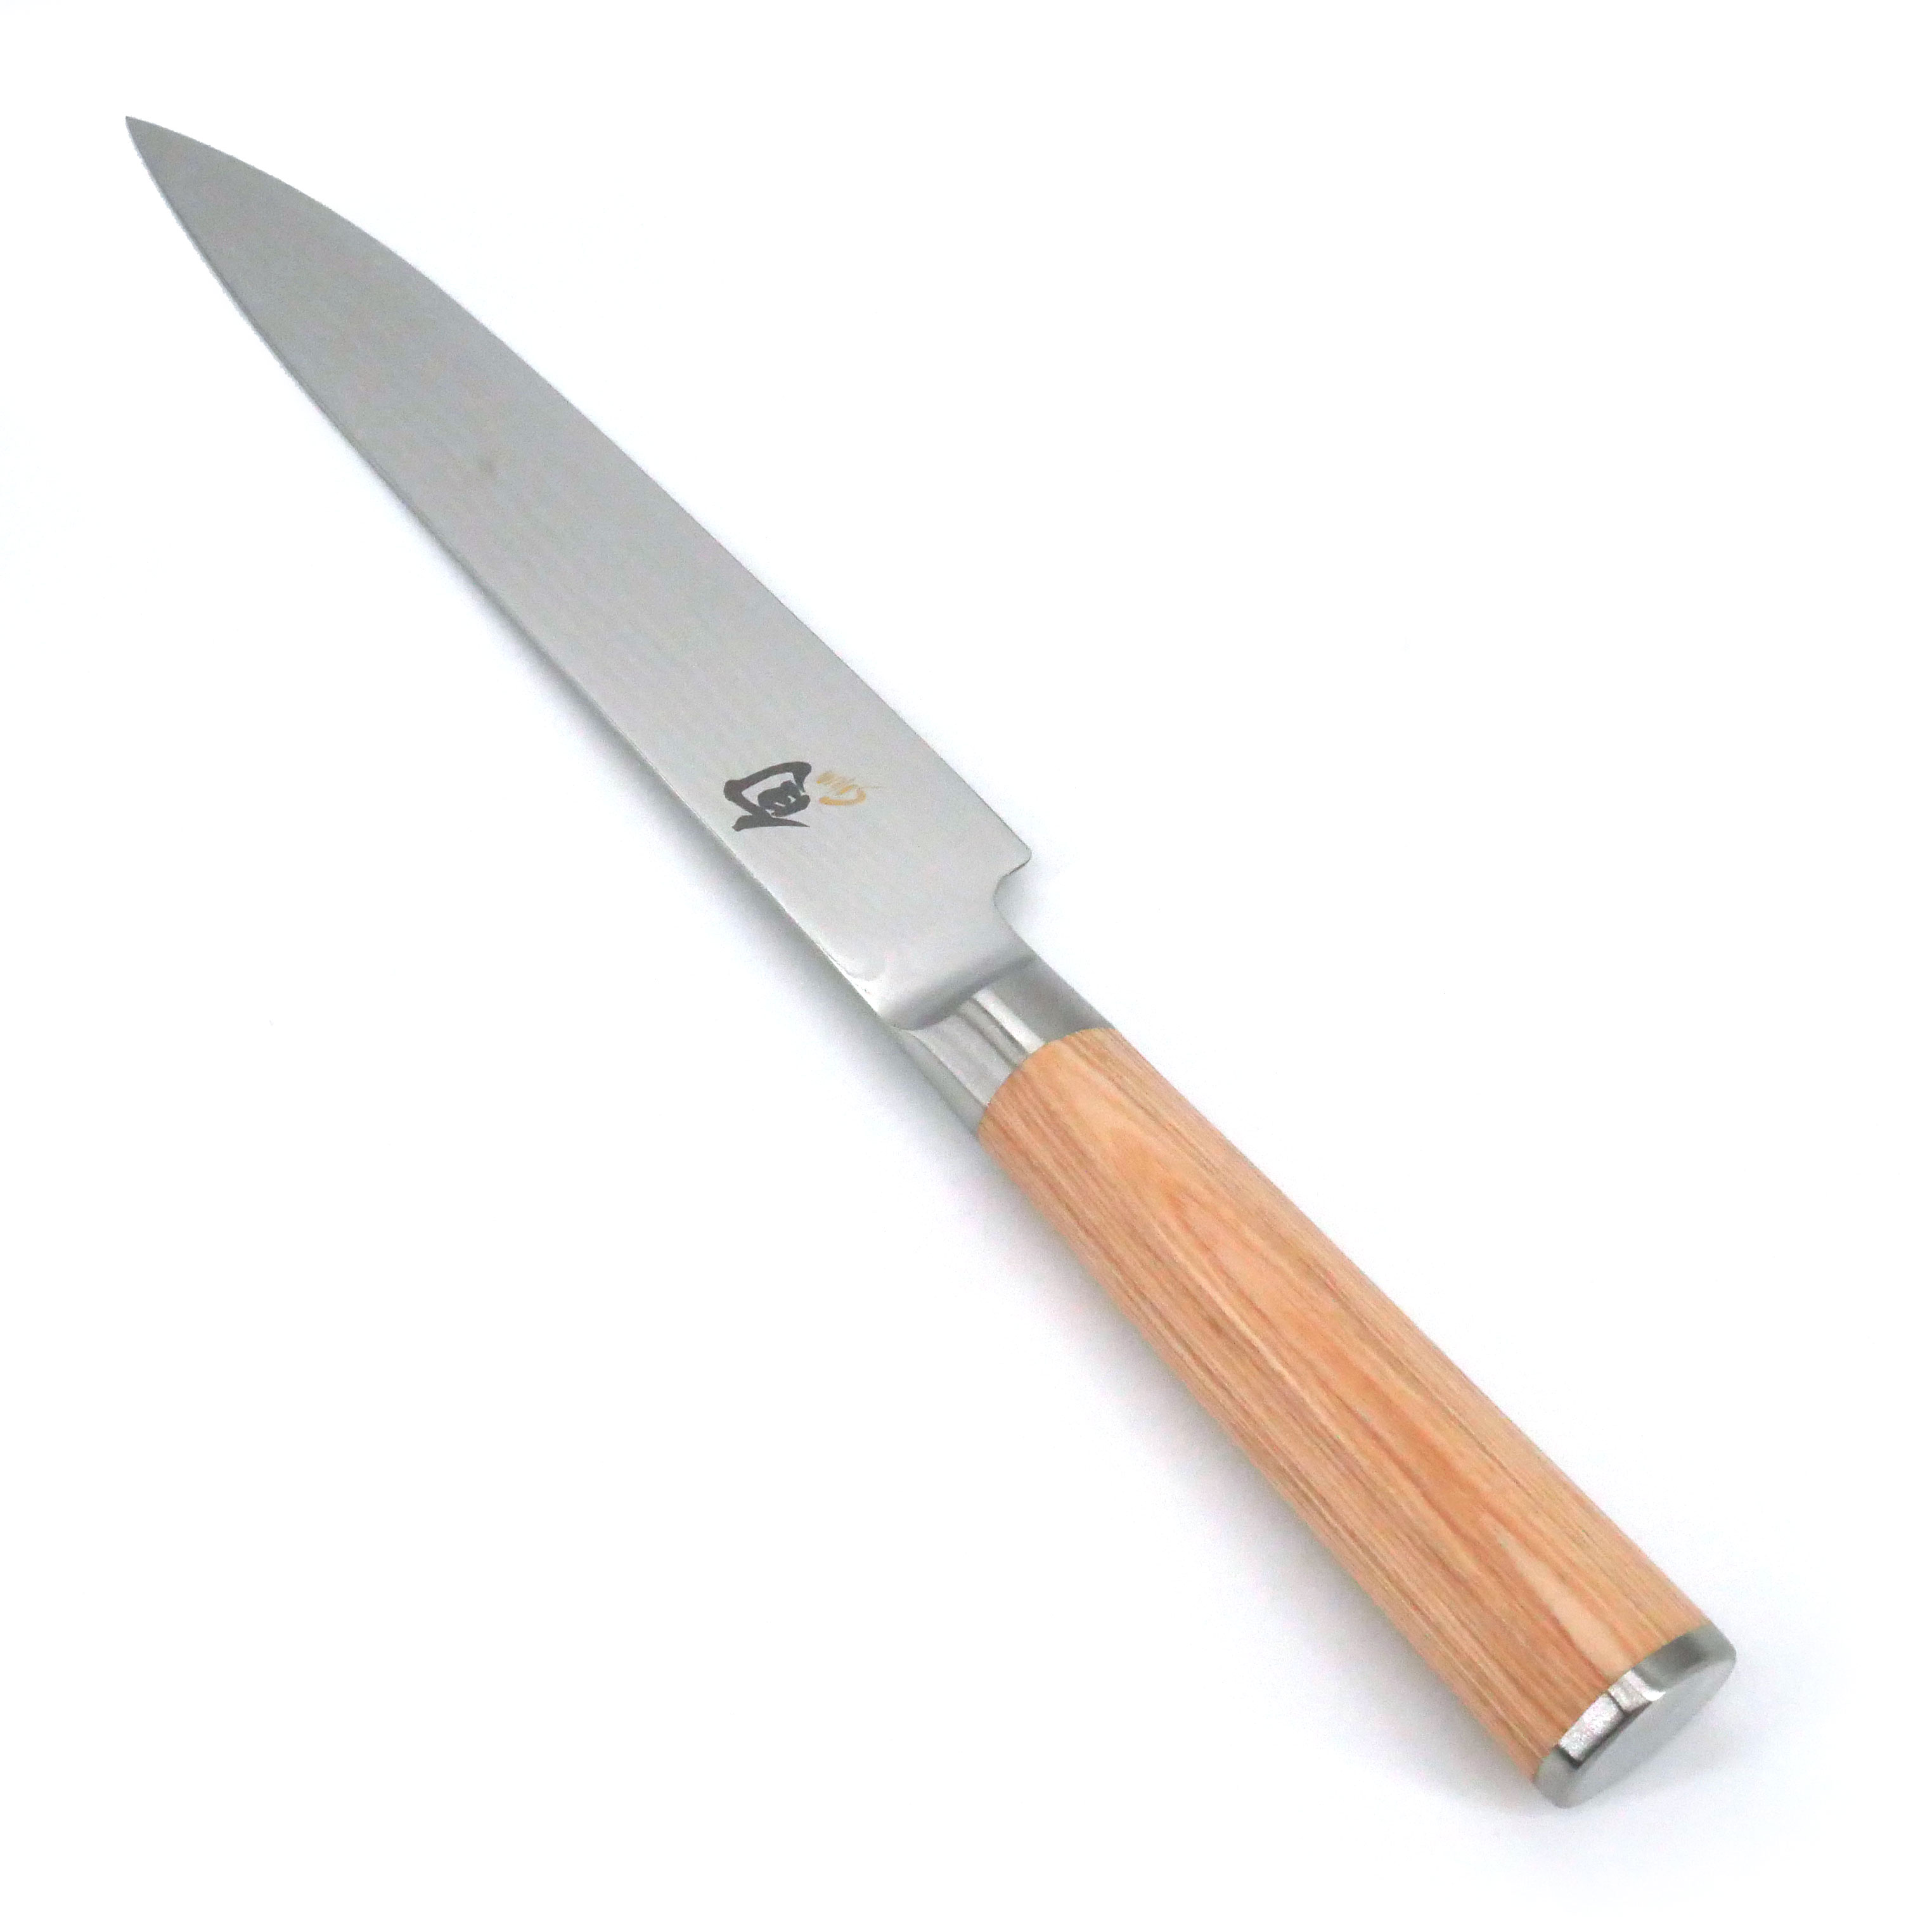 https://kyotoboutique.fr/13484/cuchillo-de-cocina-japones-para-cortar-carne-gyuto-shun-classic-damas-23-cm.jpg